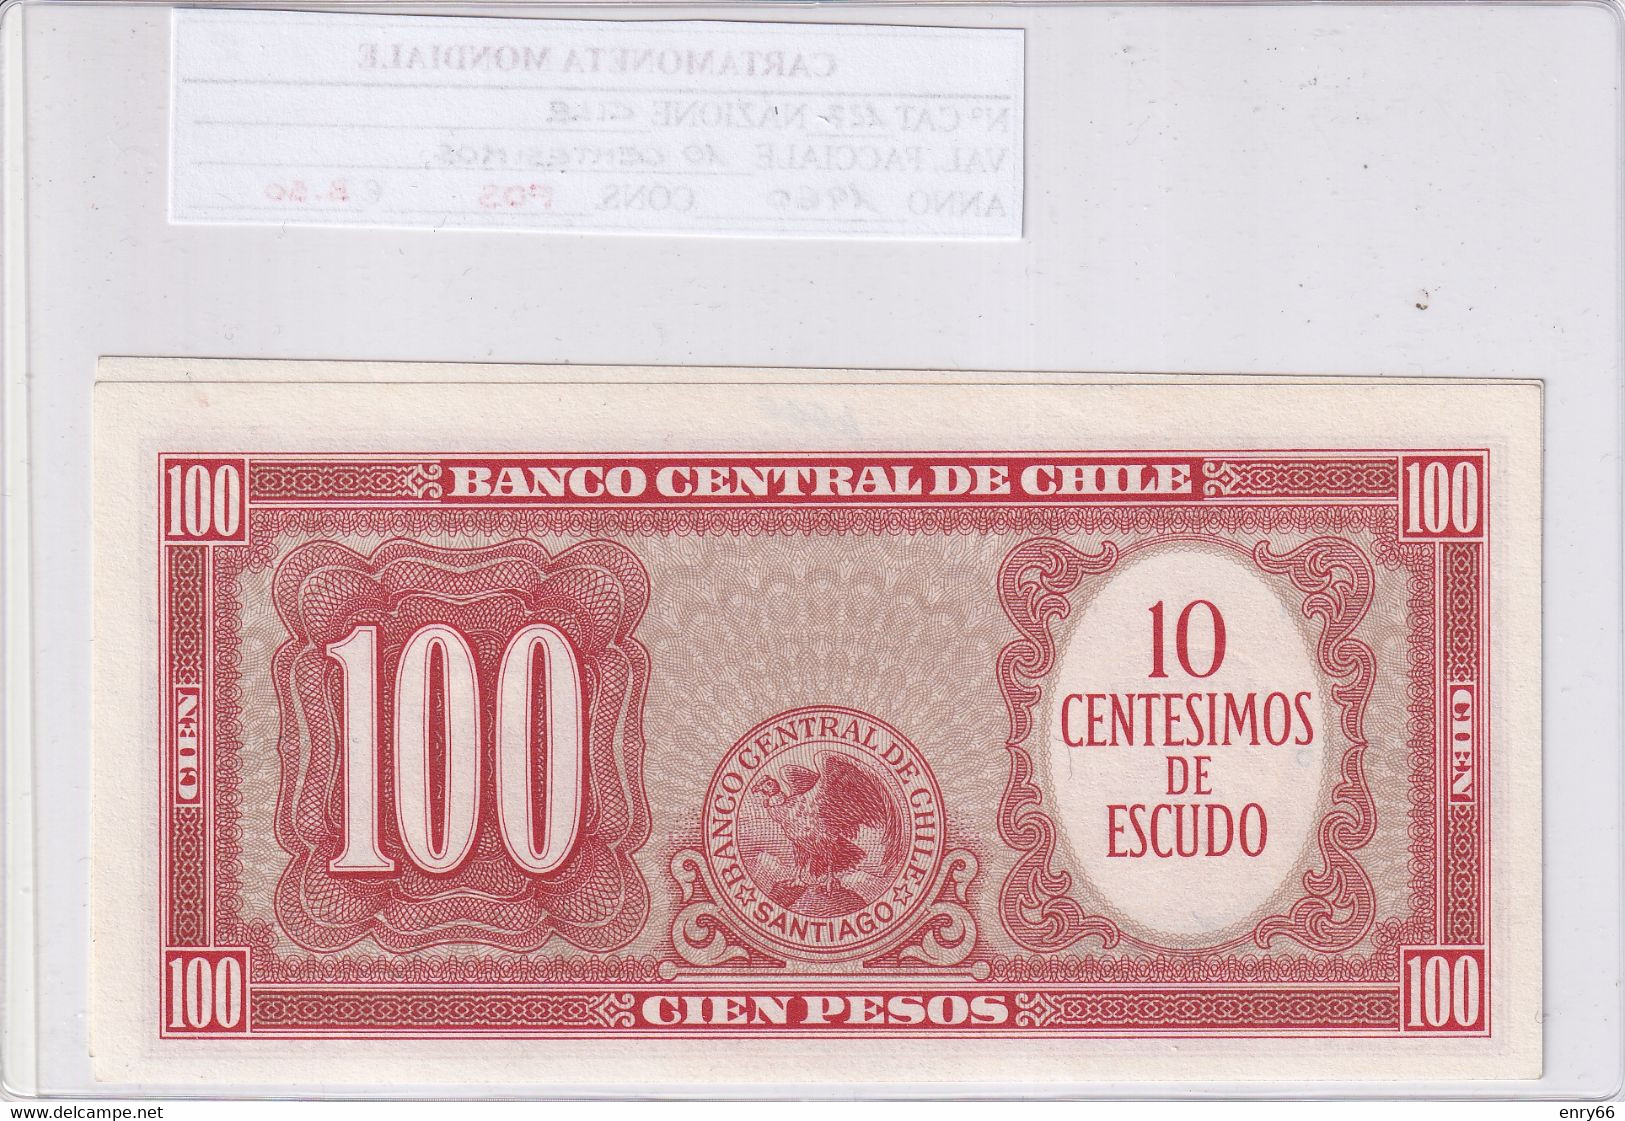 CILE 100 PESOS 1960 P127 - Cile